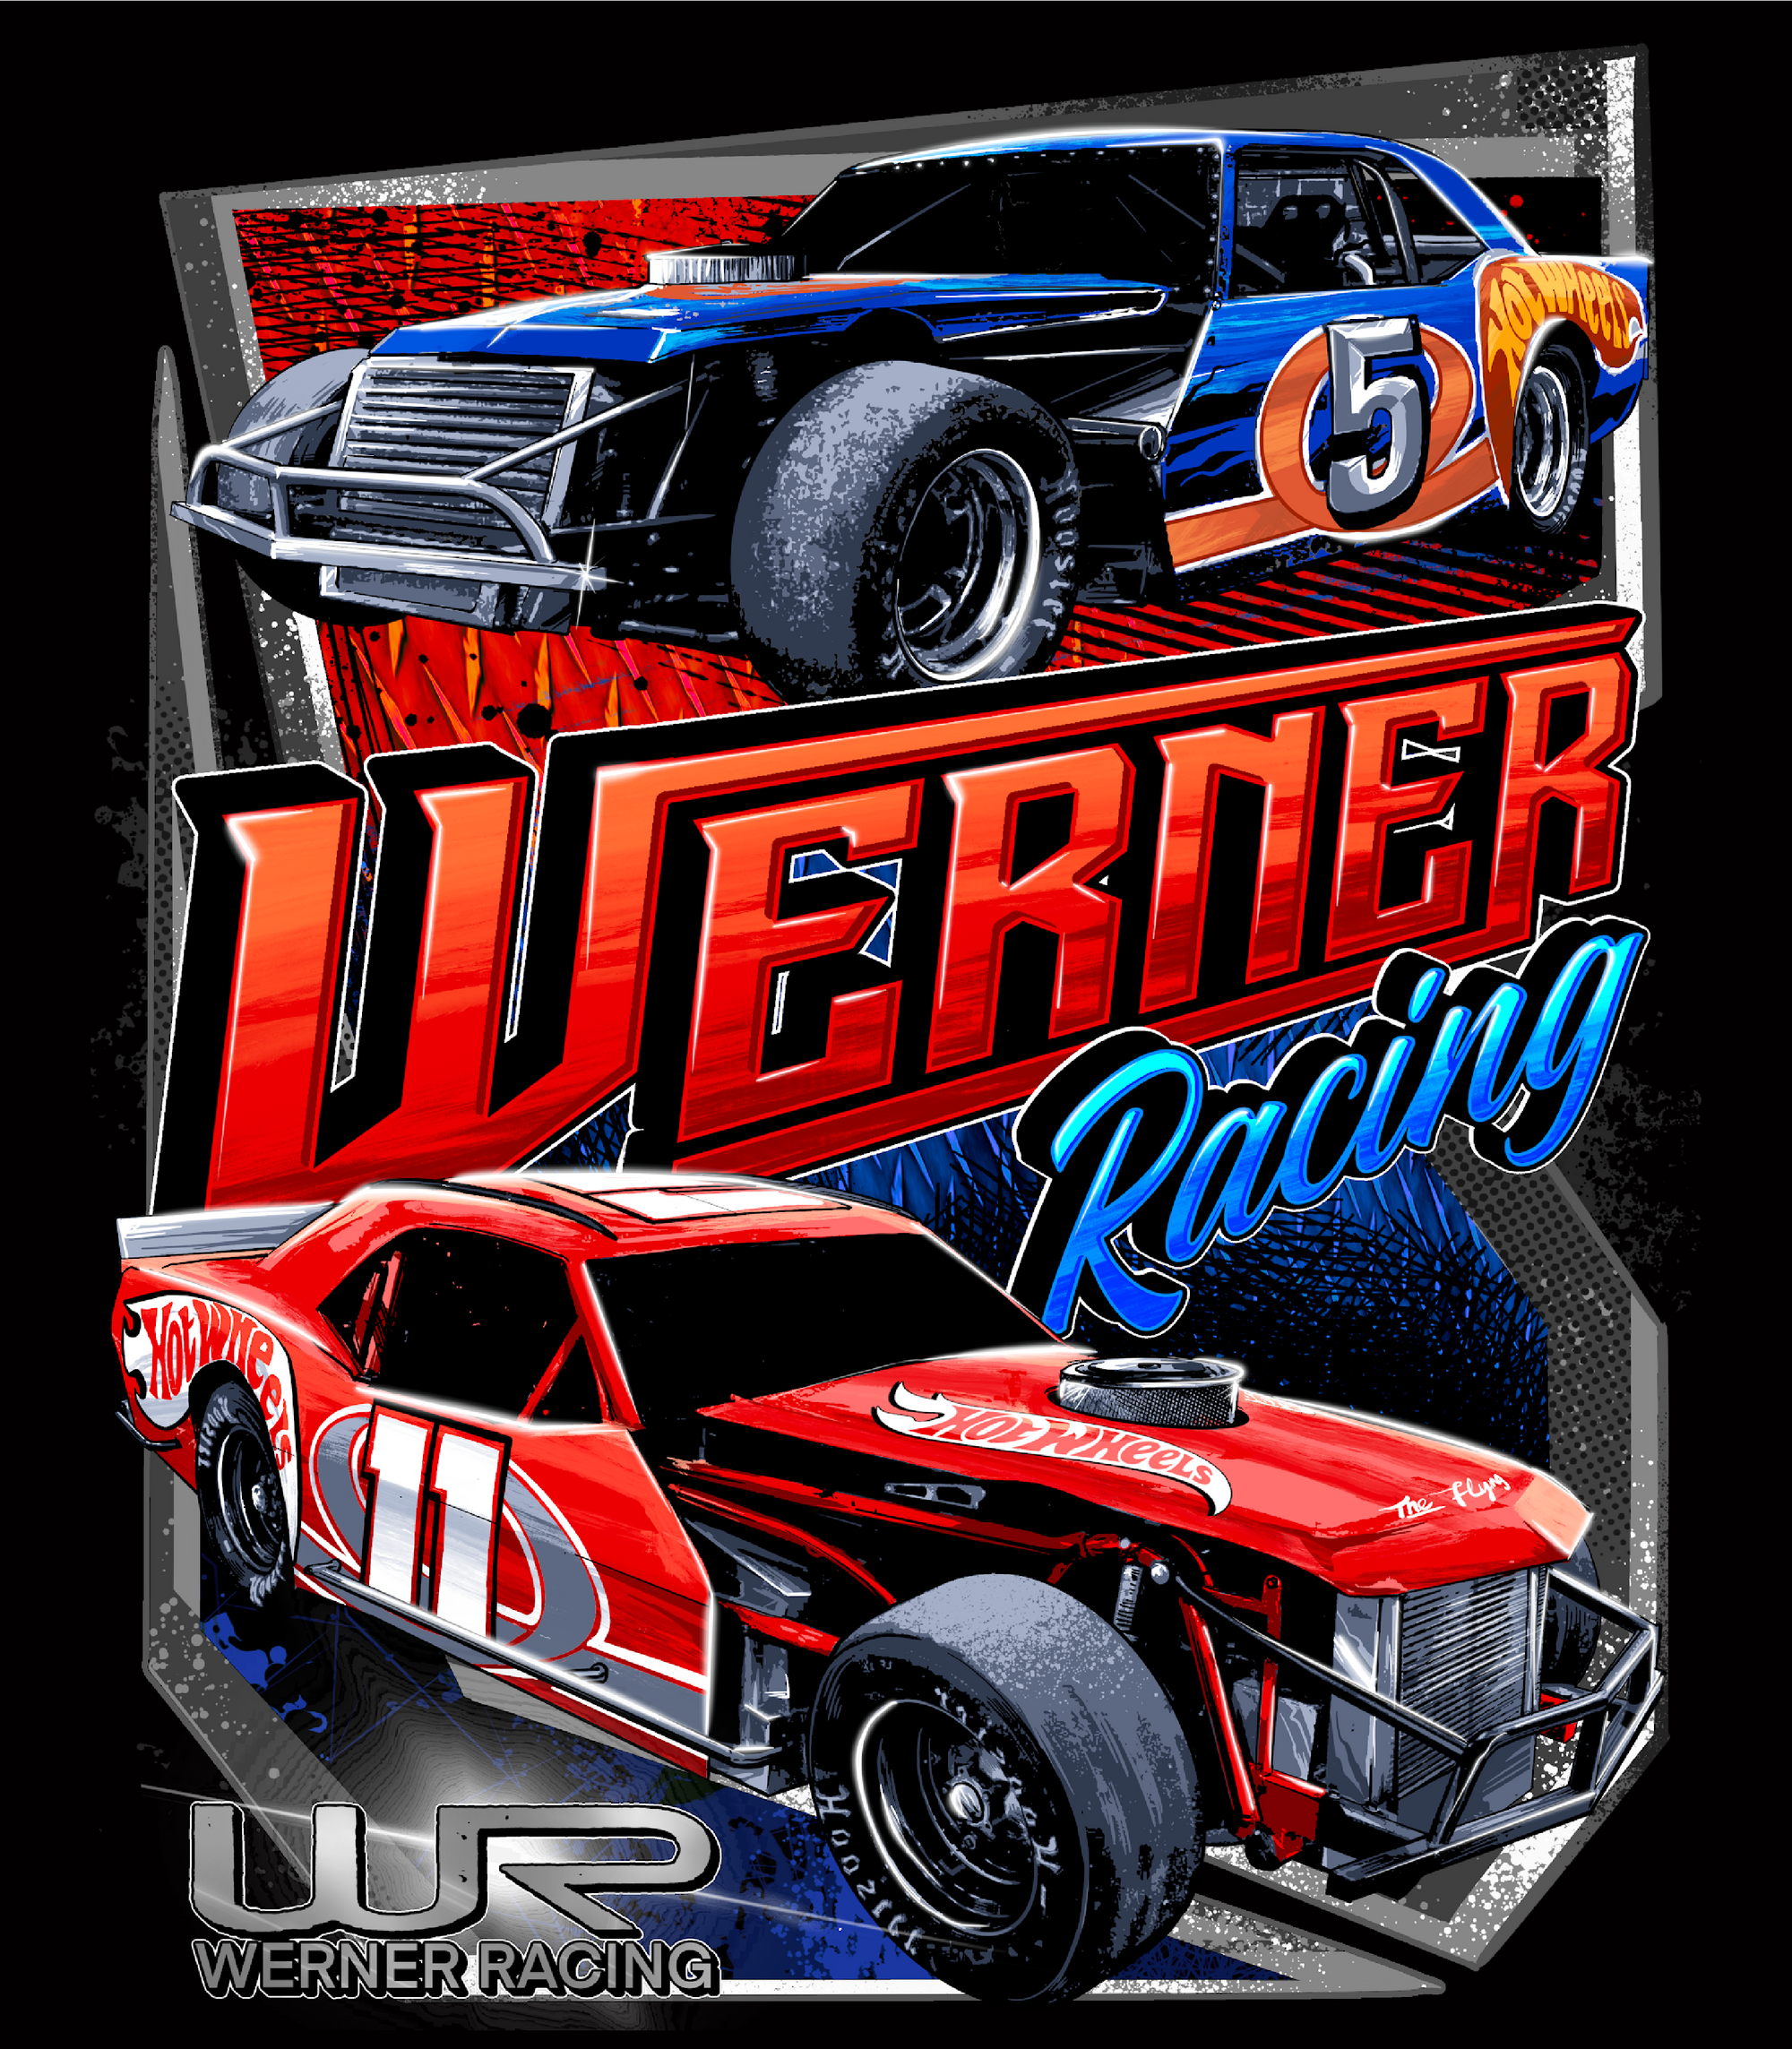 Werner Racing